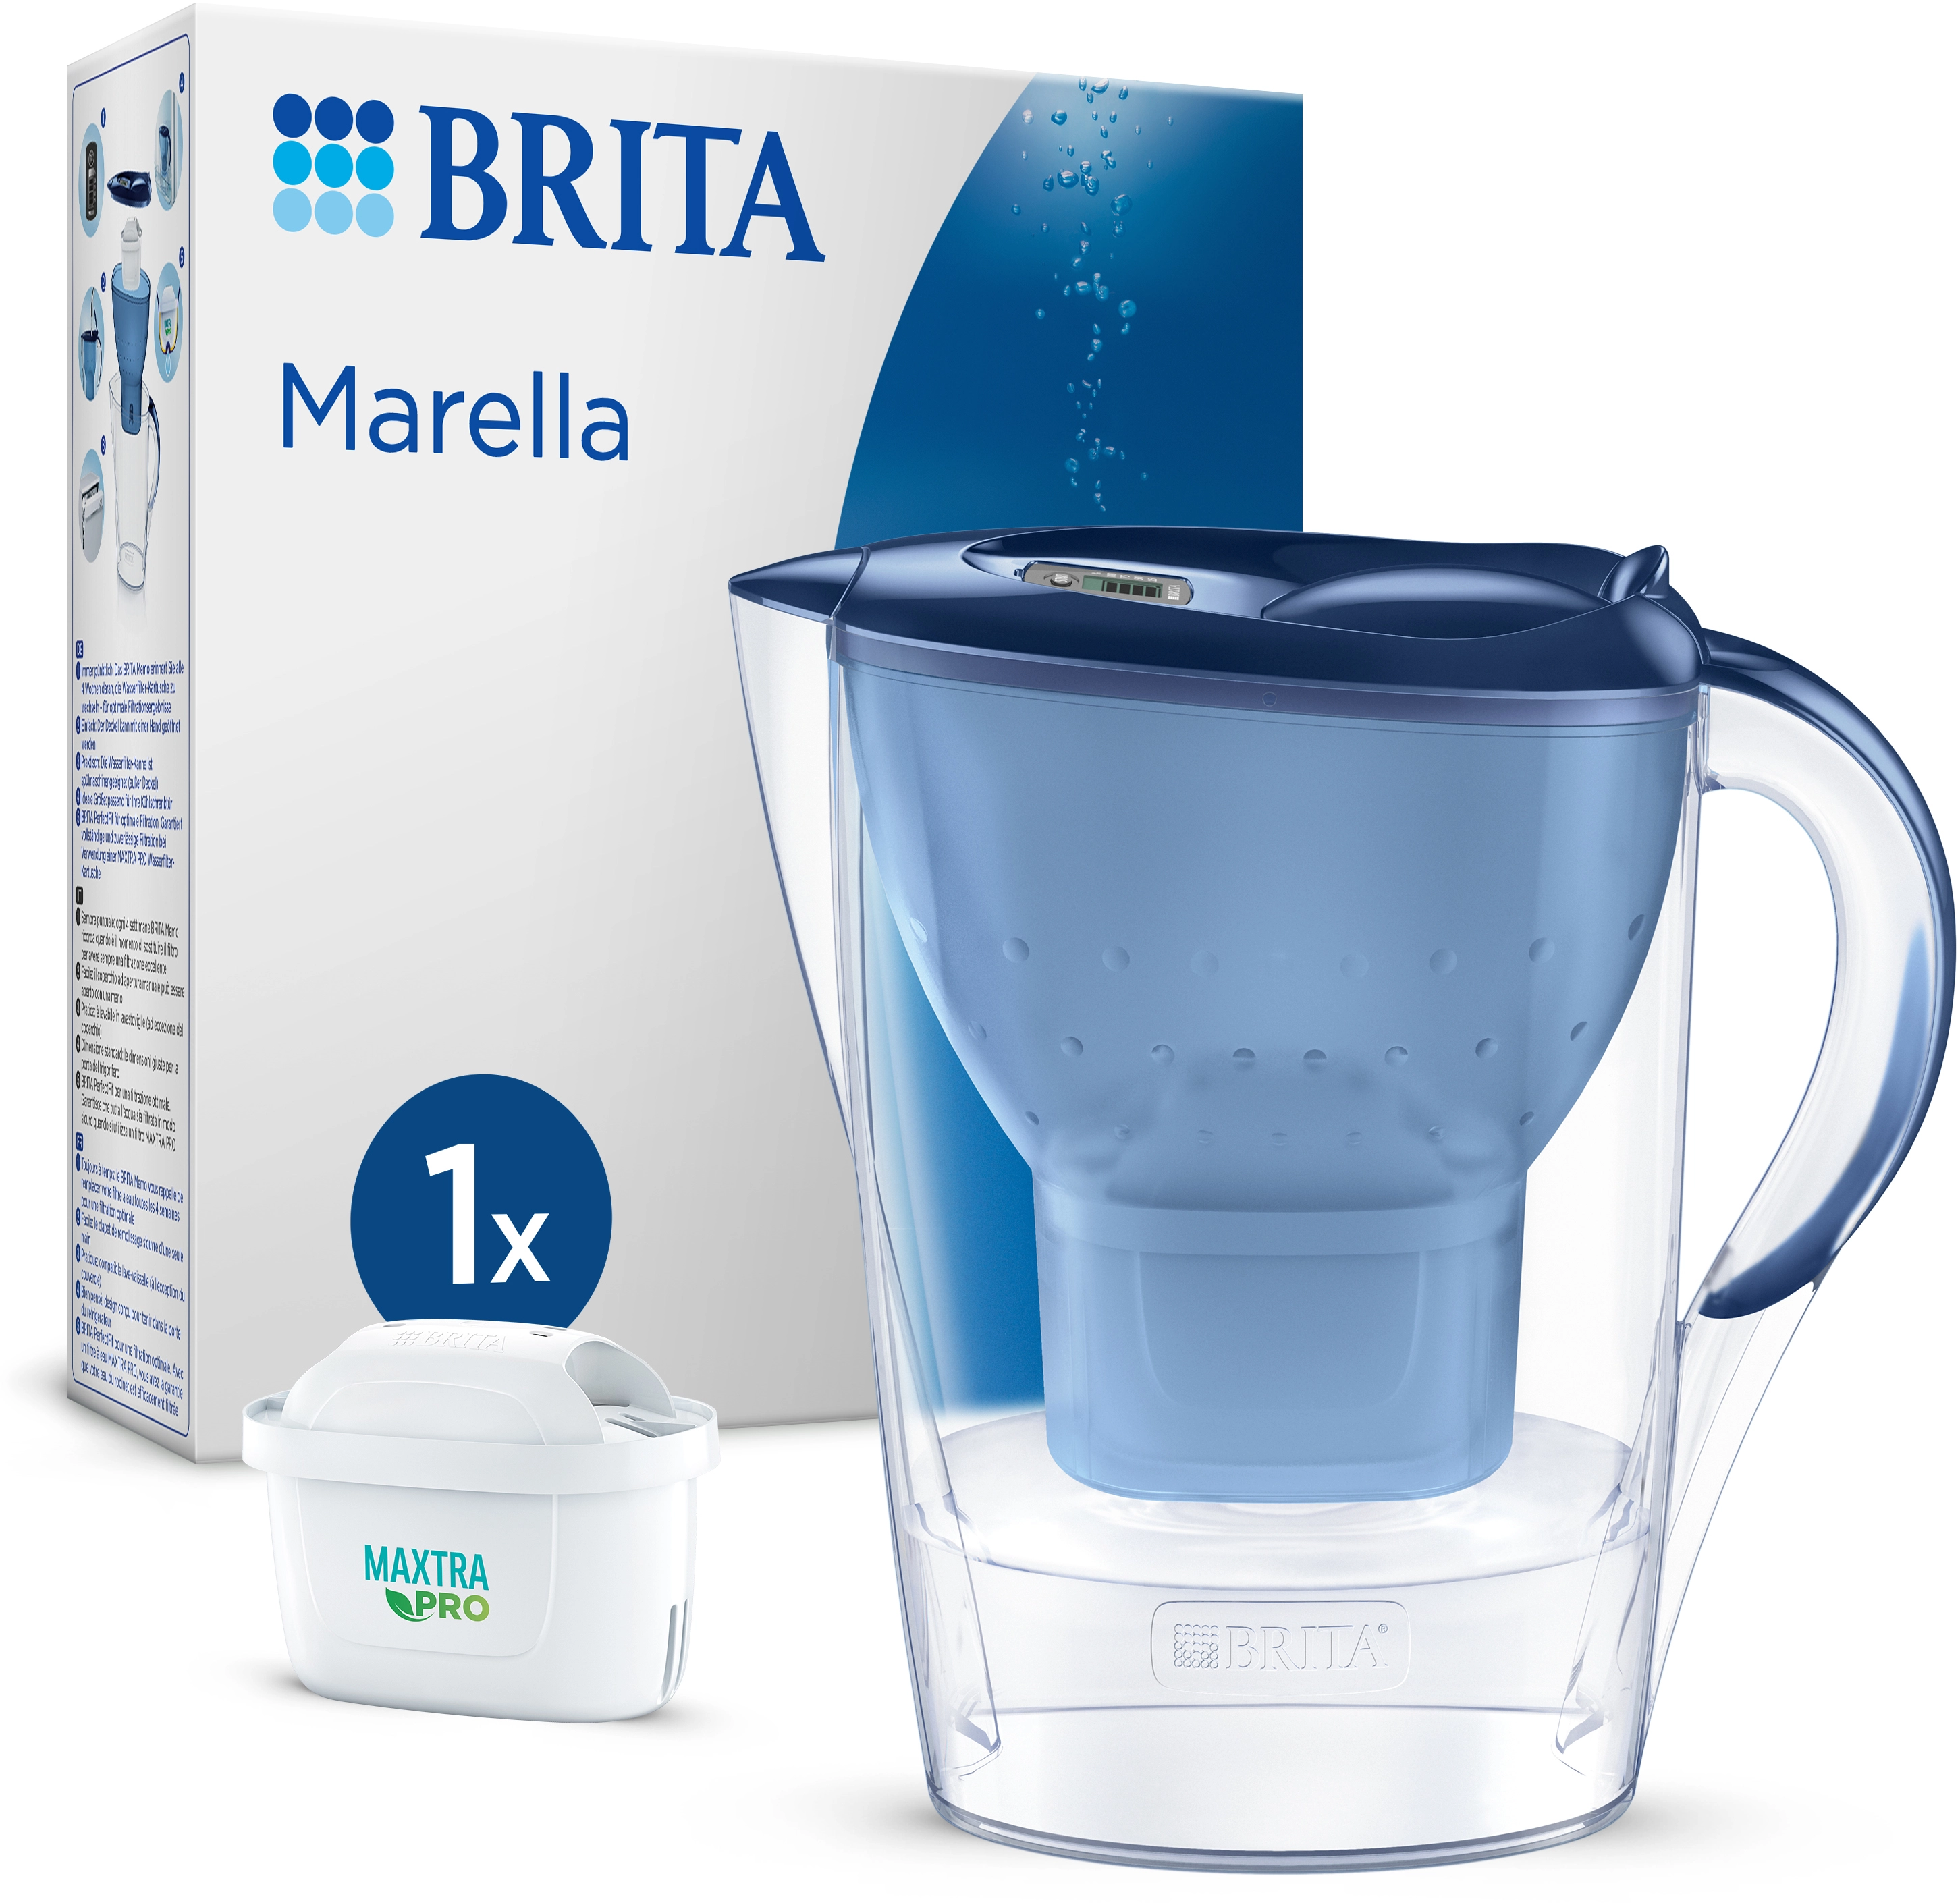 Brita Wasserfilter-Kanne Marella 2,4 bei OBI inkl. All-in-1 Maxtra Pro Kartusche l Blau kaufen